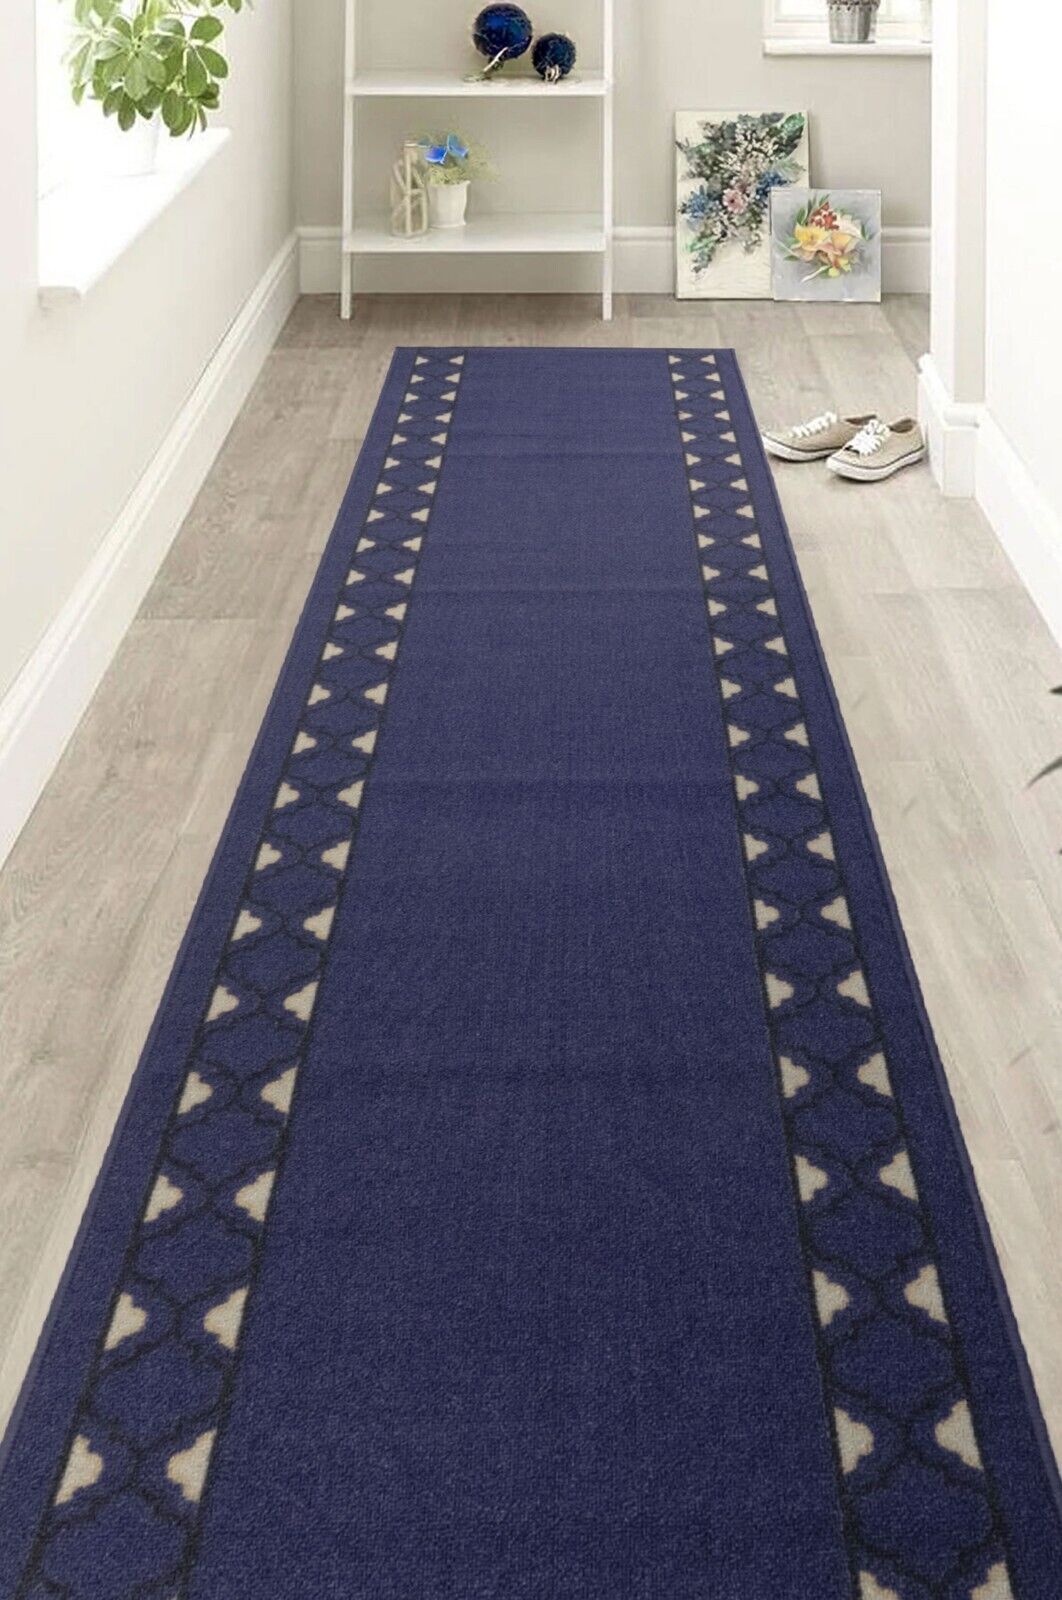 Custom Length Hallway Runner Rug Trellis Border Runner Navy Kitchen Carpet